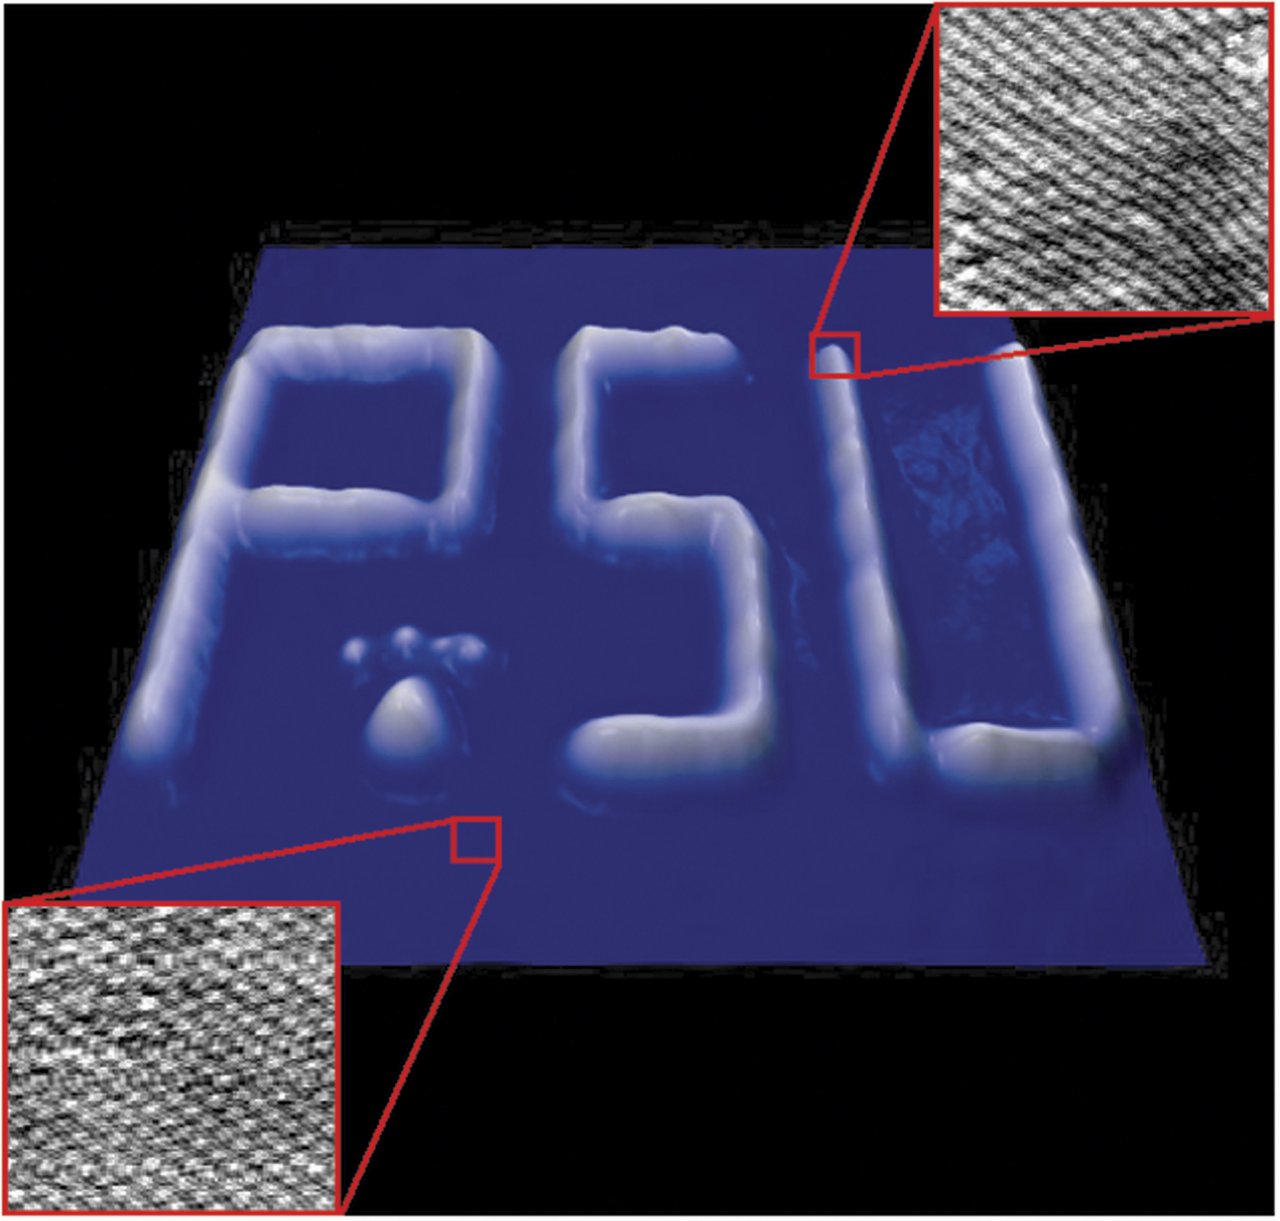 La nanographie, une écriture invisible